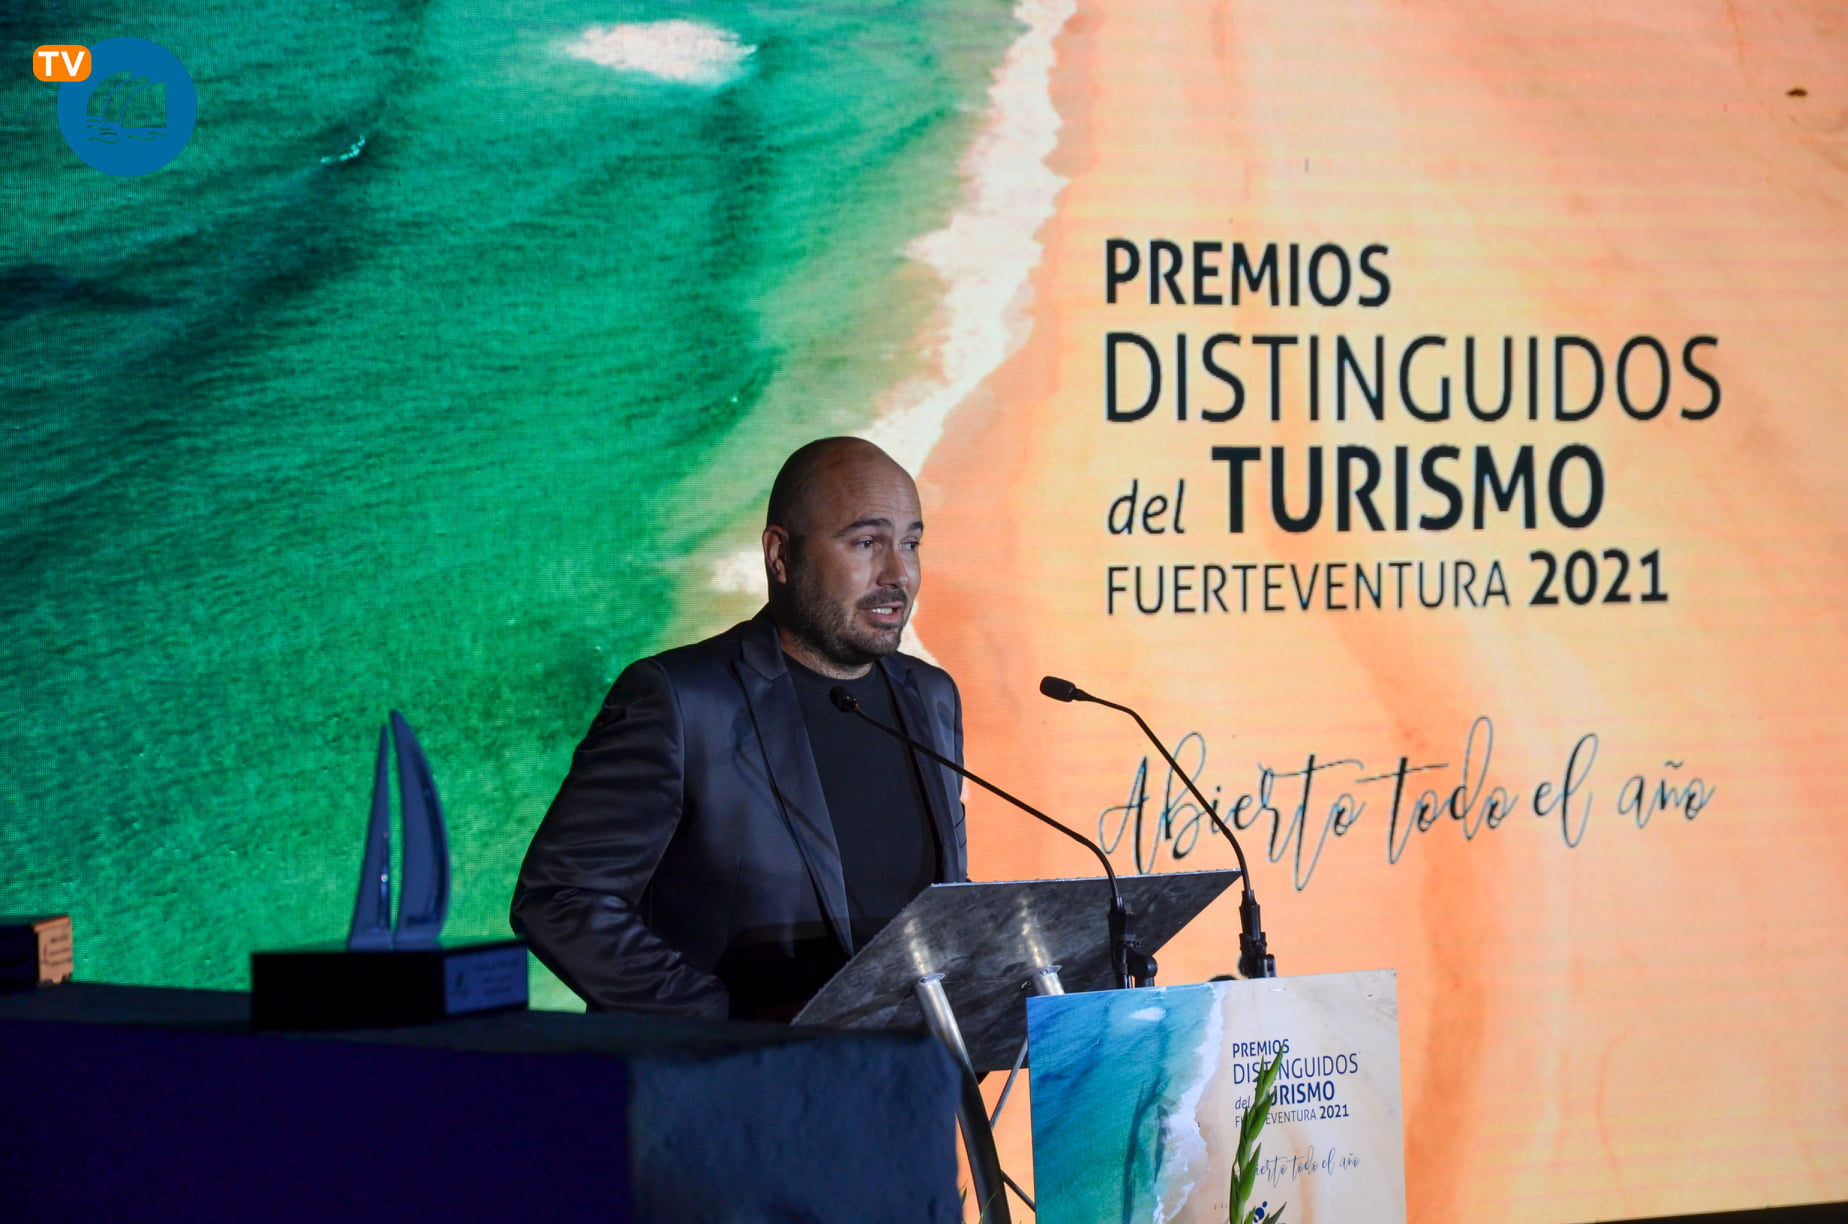 247688027_4844407808910778_1772784981000224023_n Premios 'Distinguidos del Turismo' hoy domingo a las 8 en Mírame TV